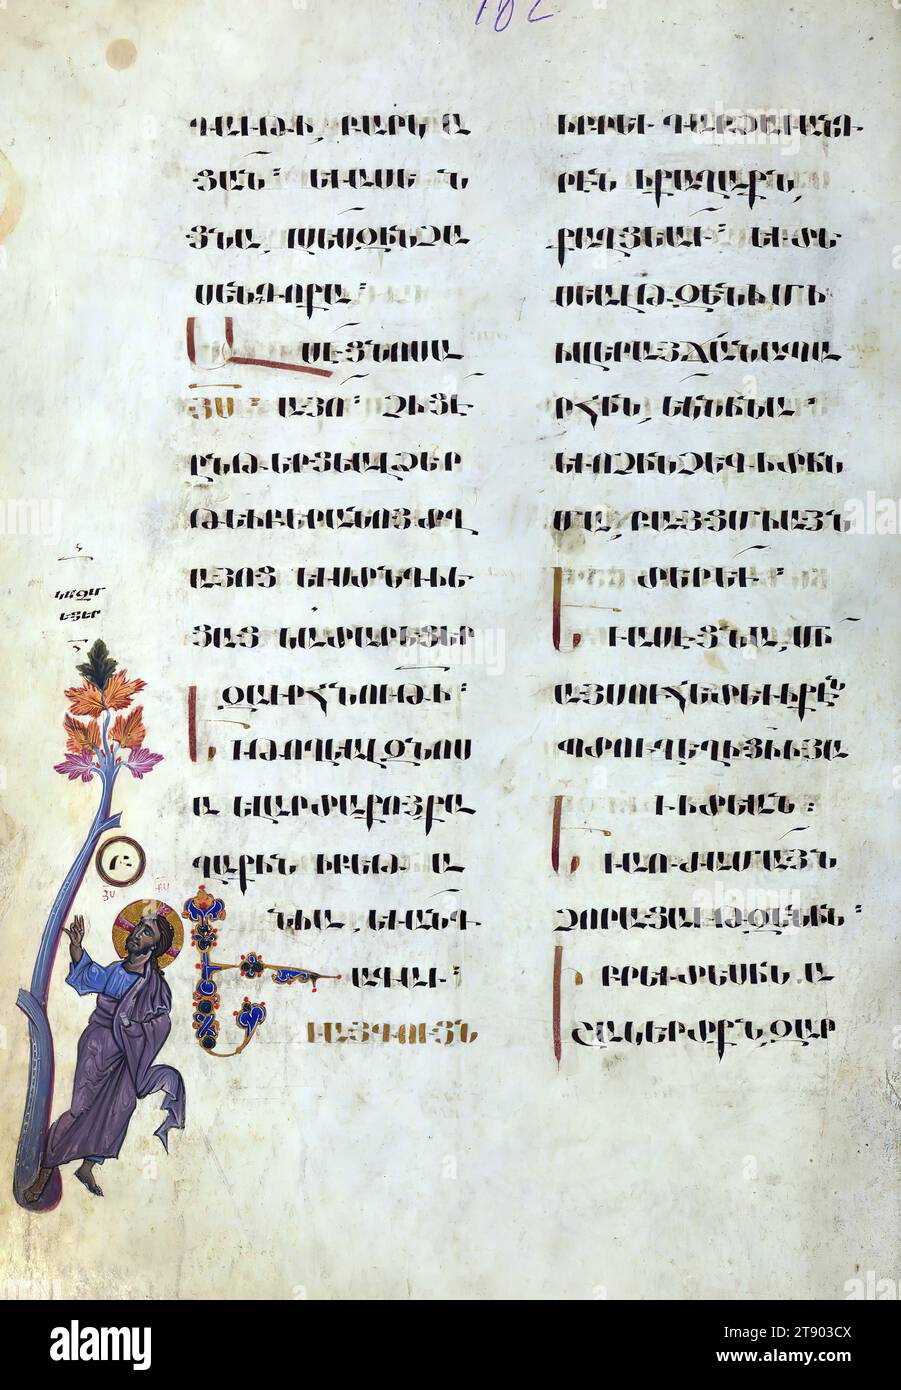 T'oros Roslin Évangiles, Christ maudit le figuier, ce manuscrit a été réalisé en 1262 par T'oros Roslin, un illuminateur extrêmement important, qui a étendu la gamme des enluminures manuscrites en introduisant un cycle entier d'images dans les évangiles plutôt que, comme c'était traditionnel, d'inclure seulement les portraits des évangélistes. Ce manuscrit particulier a été créé au scriptorium de Hromkla, qui est devenu le principal centre artistique de la Cilicie arménienne sous le règne du catholicos Constantin Ier (1221-1267) Banque D'Images